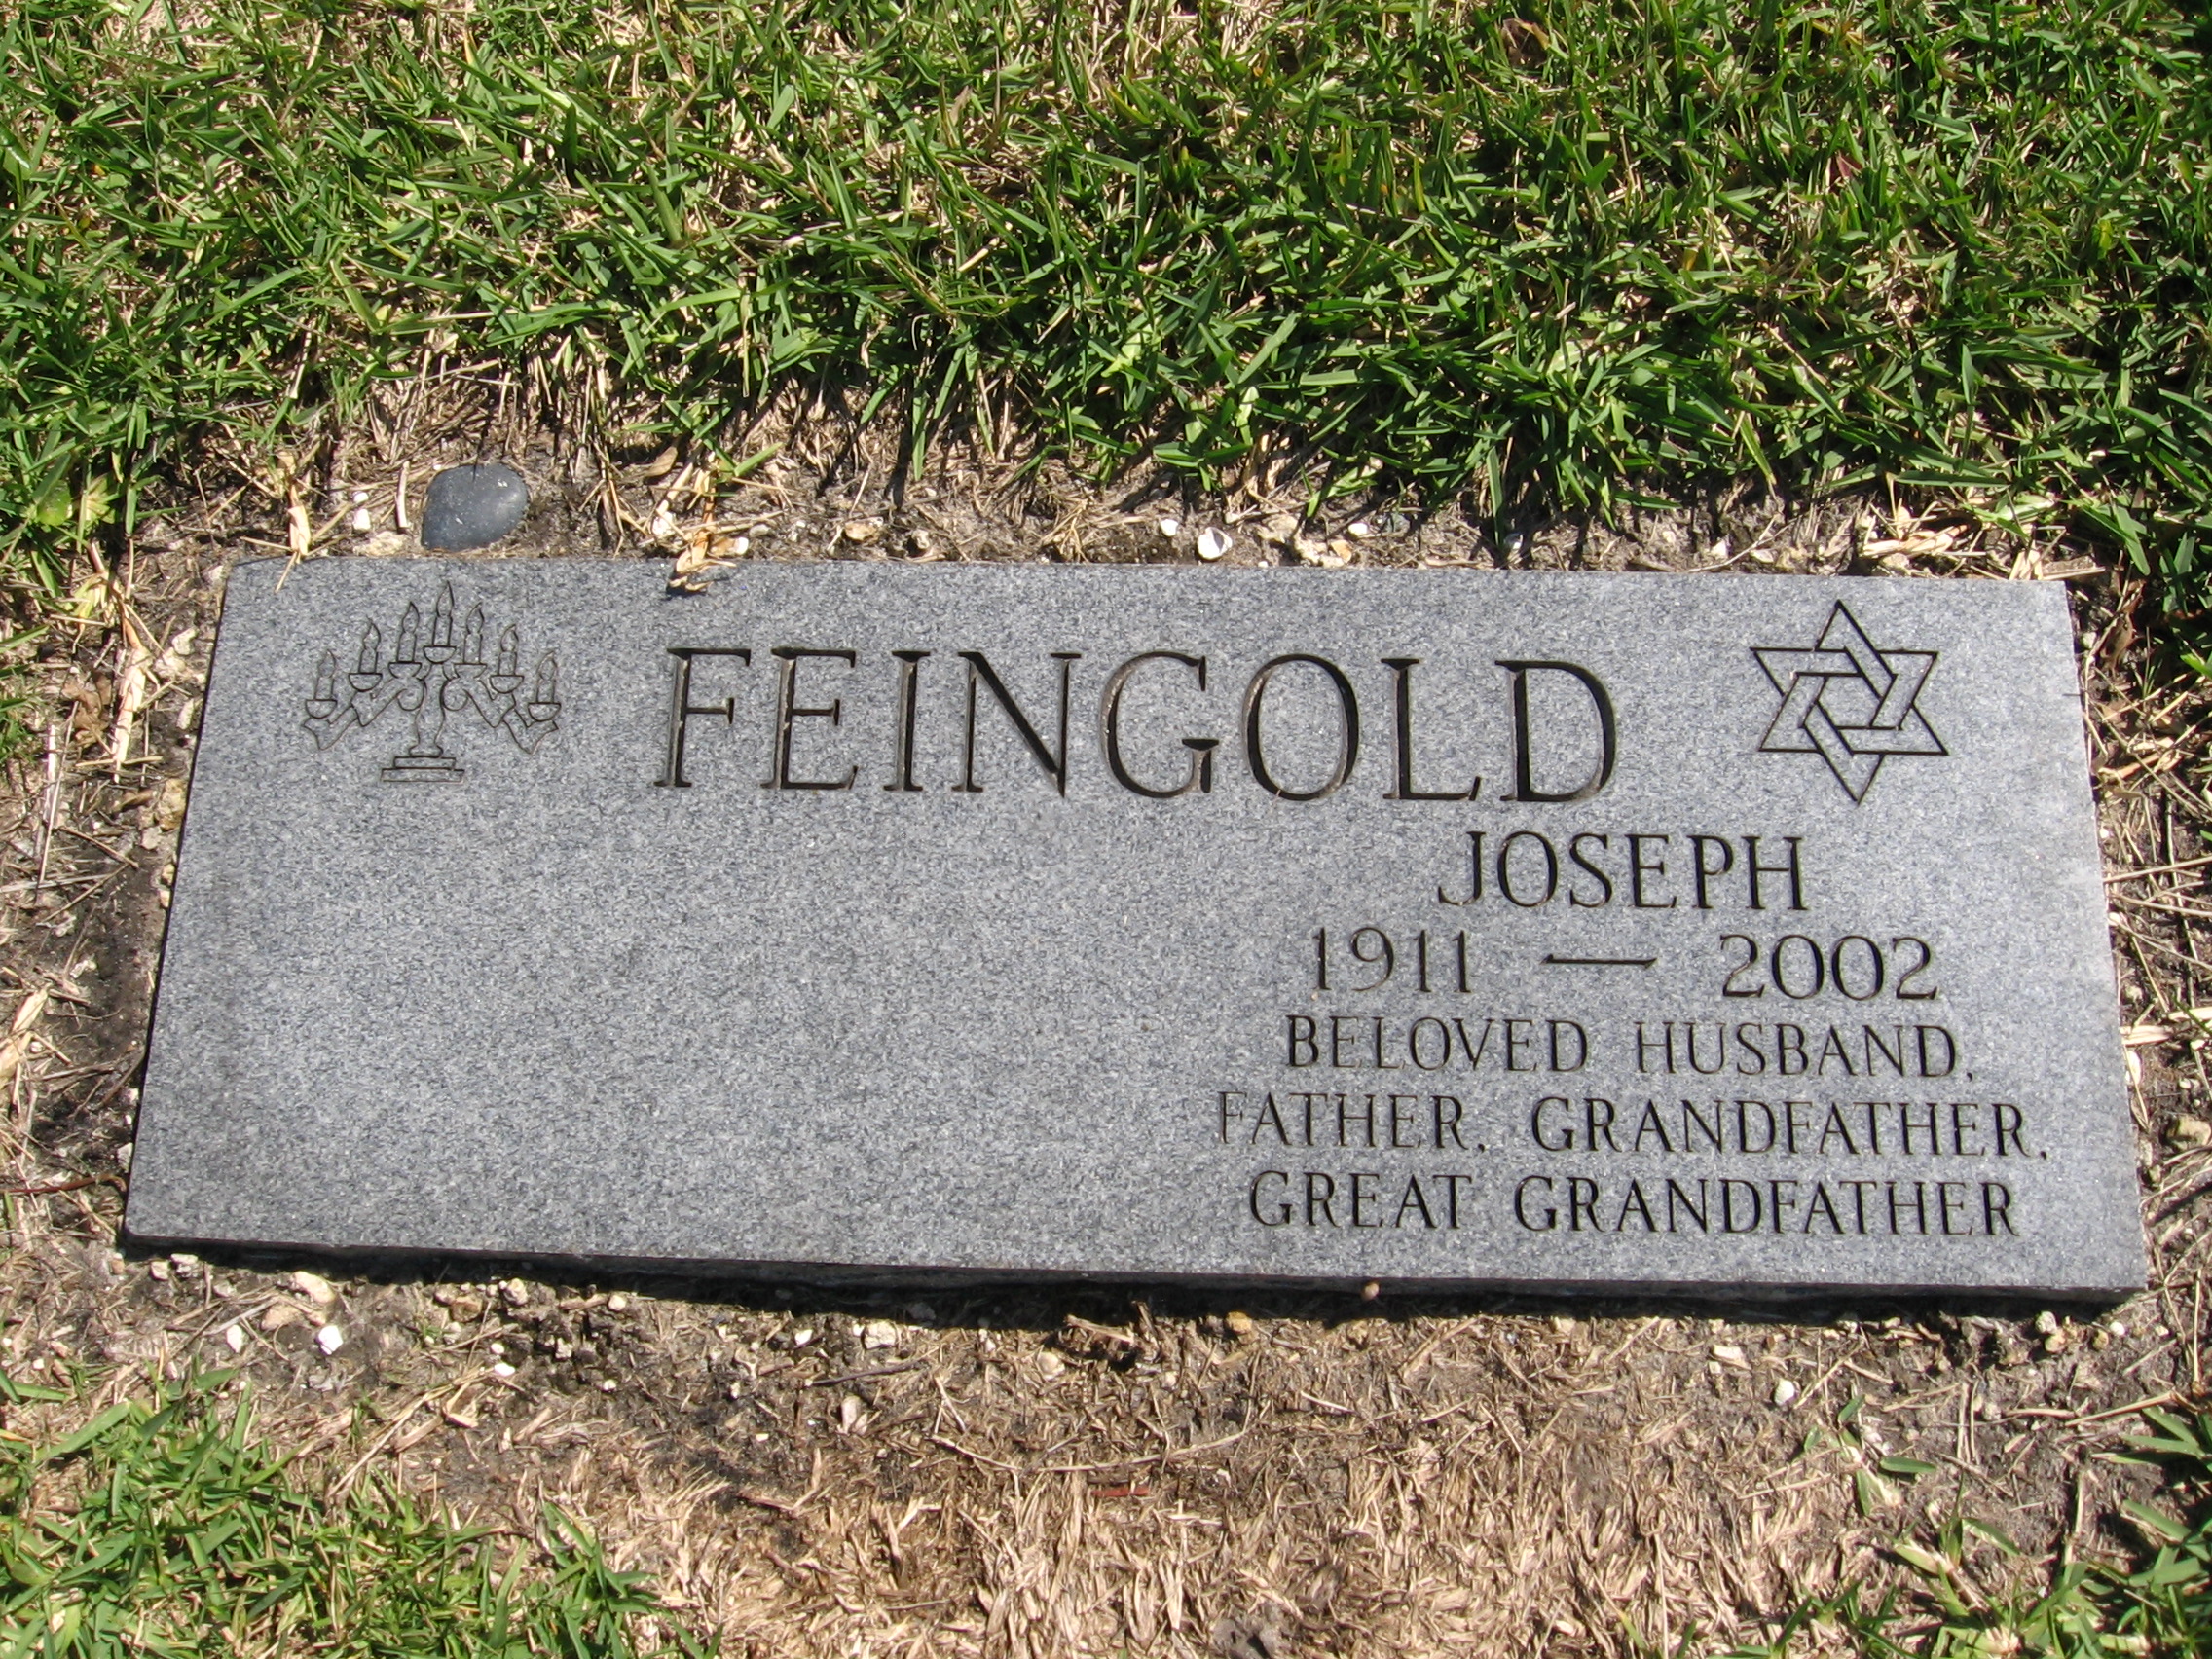 Joseph Feingold